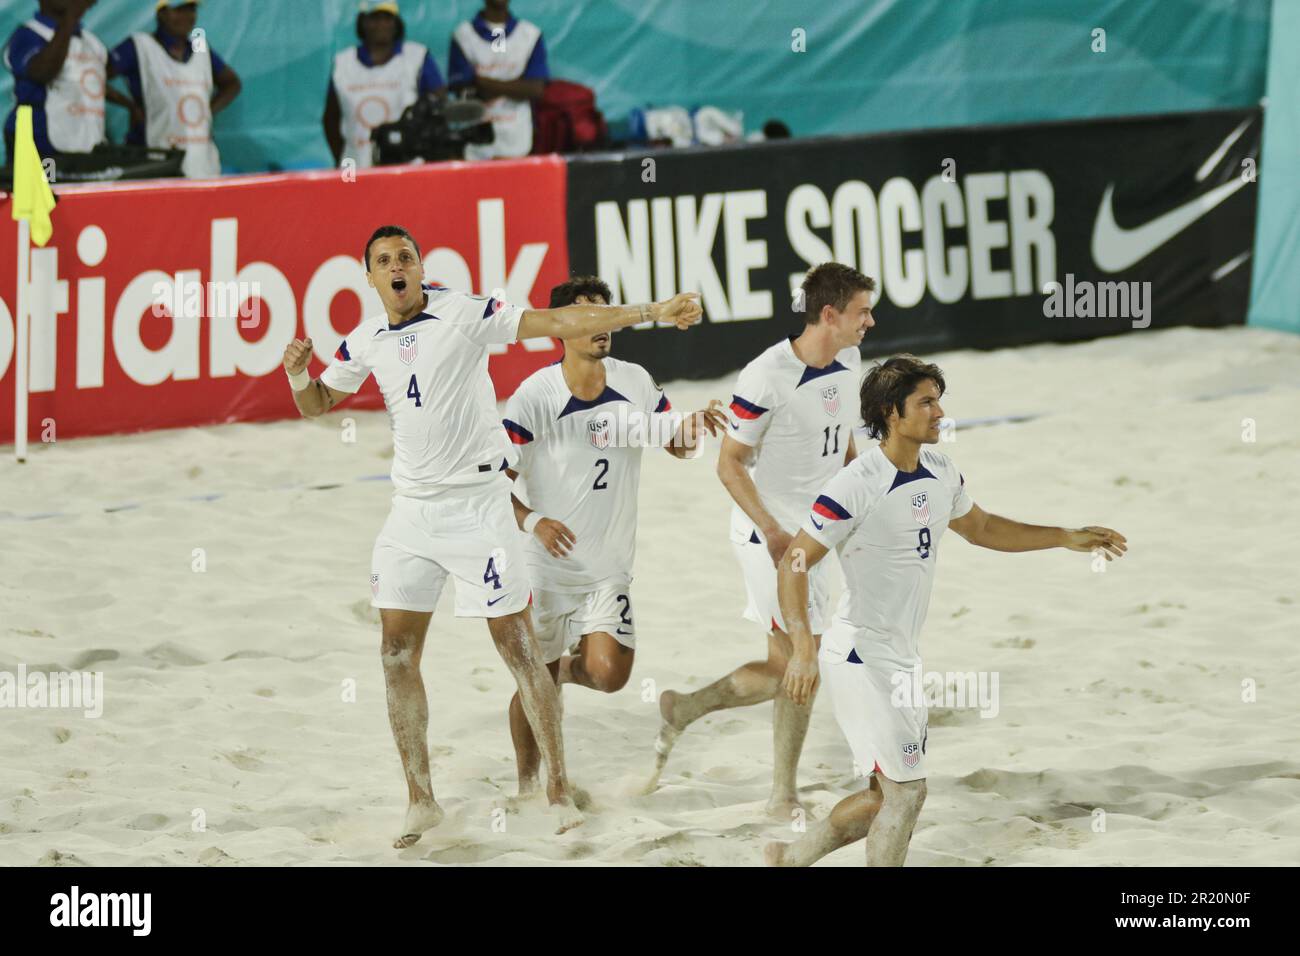 USA vs Mexico Beach Soccer Championship in Nassau The Bahamas Stock Photo